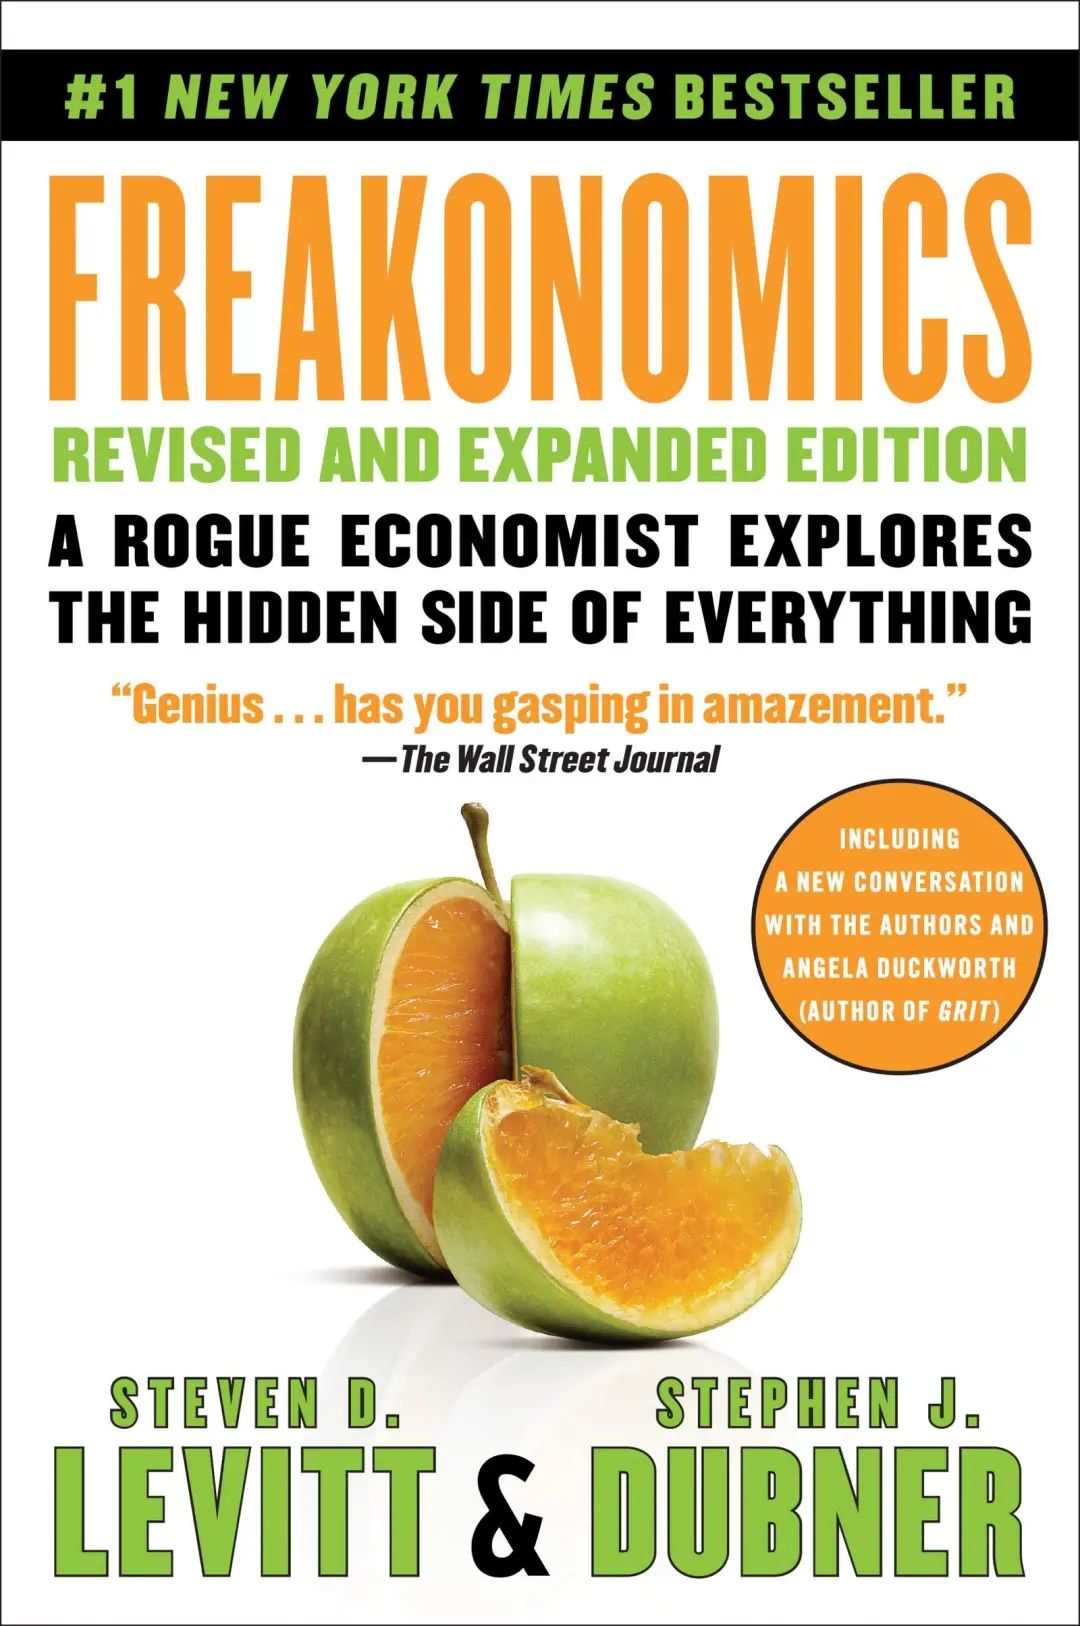 推荐三本我的经济学珍藏好书